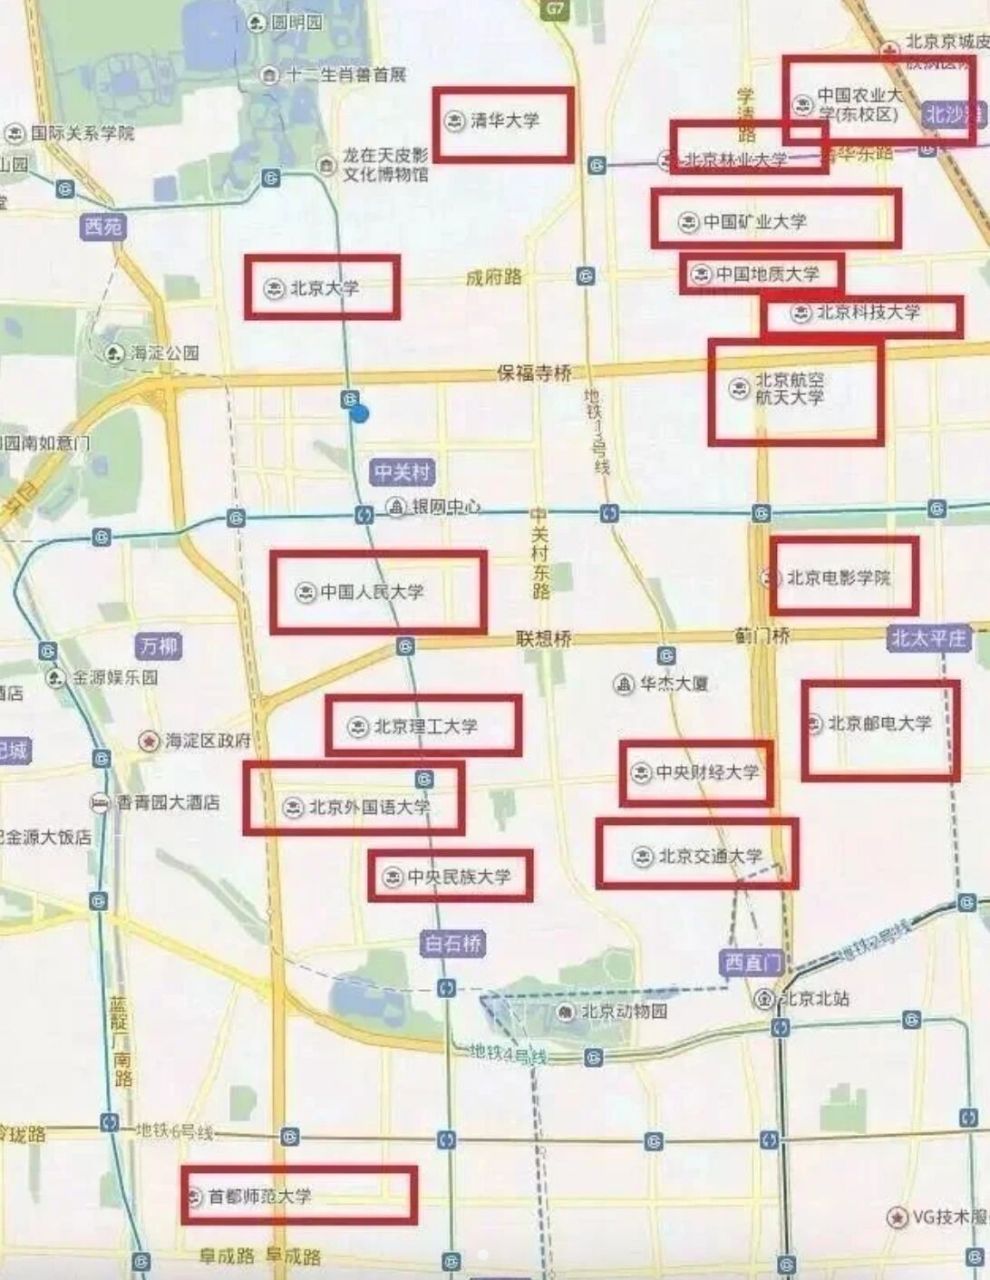 一张图看清北京各大高校分布位置70 北京市作为首都,一直都是政治和